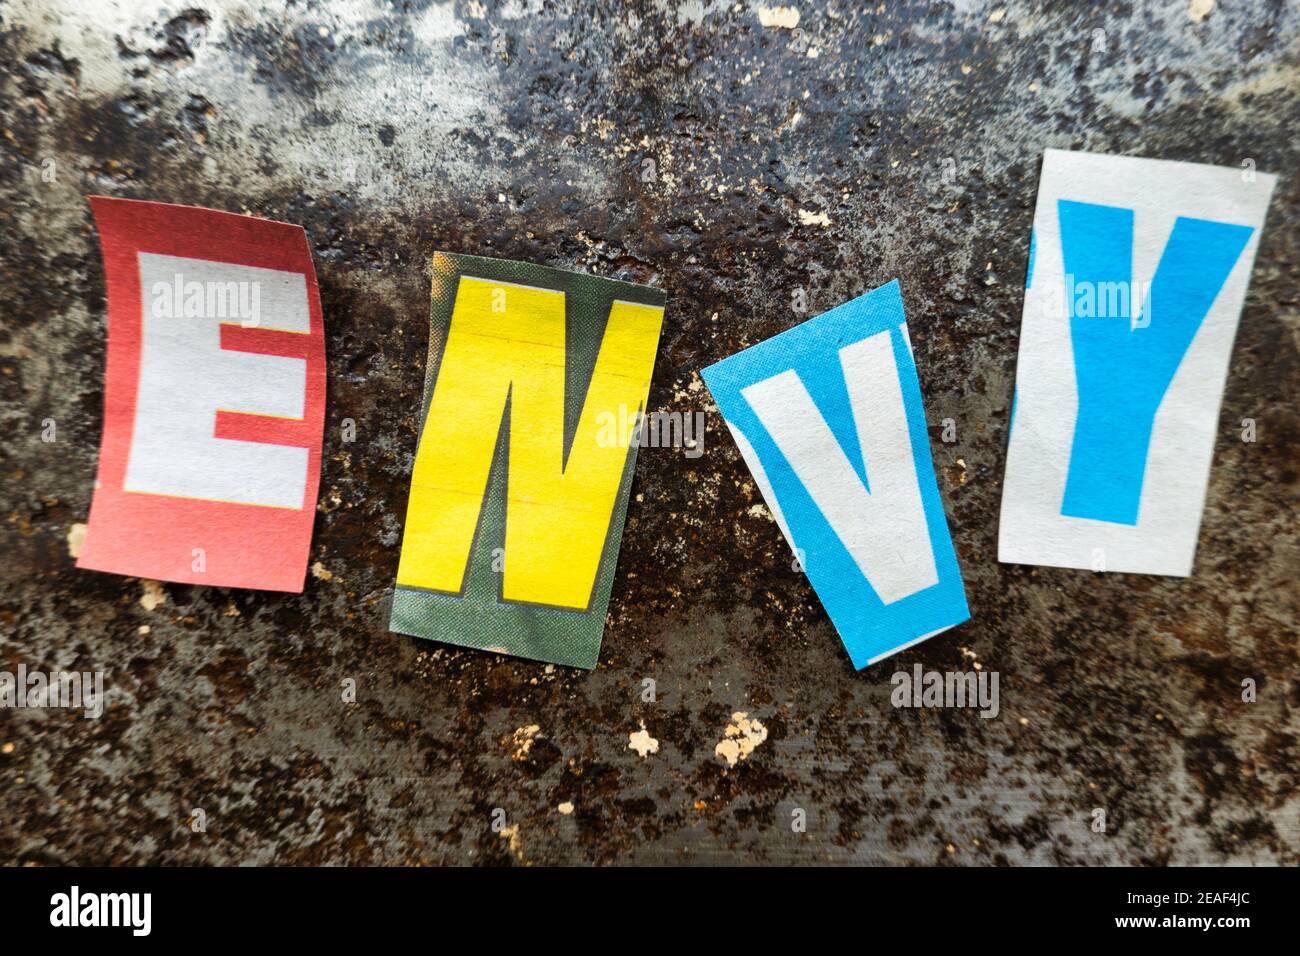 TheWord 'ENVY' utilisant des lettres papier découpées dans la typographie d'effet de note de rançon, Etats-Unis Banque D'Images